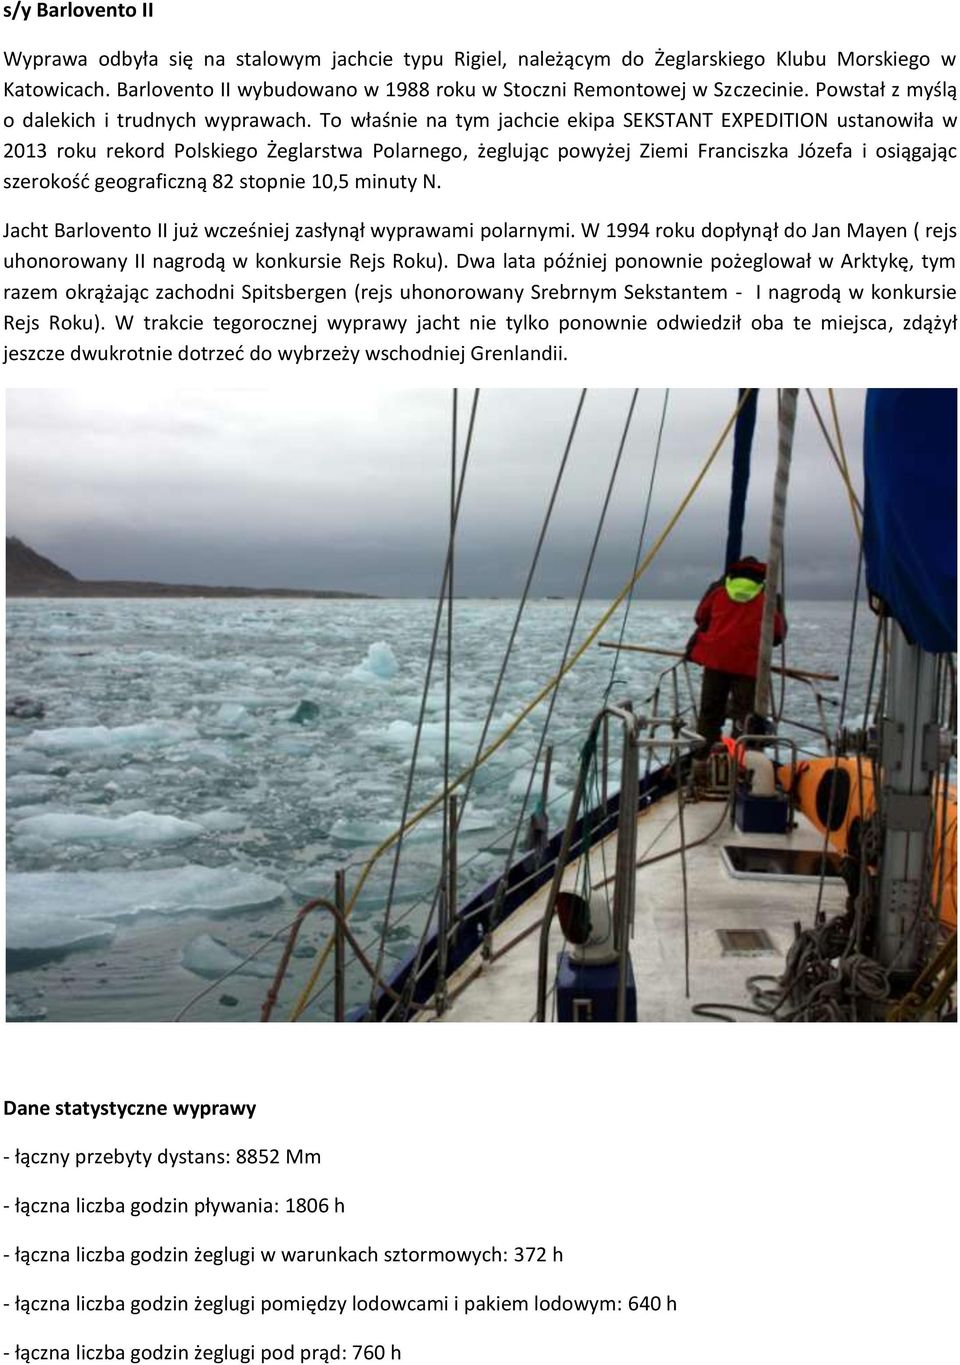 To właśnie na tym jachcie ekipa SEKSTANT EXPEDITION ustanowiła w 2013 roku rekord Polskiego Żeglarstwa Polarnego, żeglując powyżej Ziemi Franciszka Józefa i osiągając szerokośd geograficzną 82